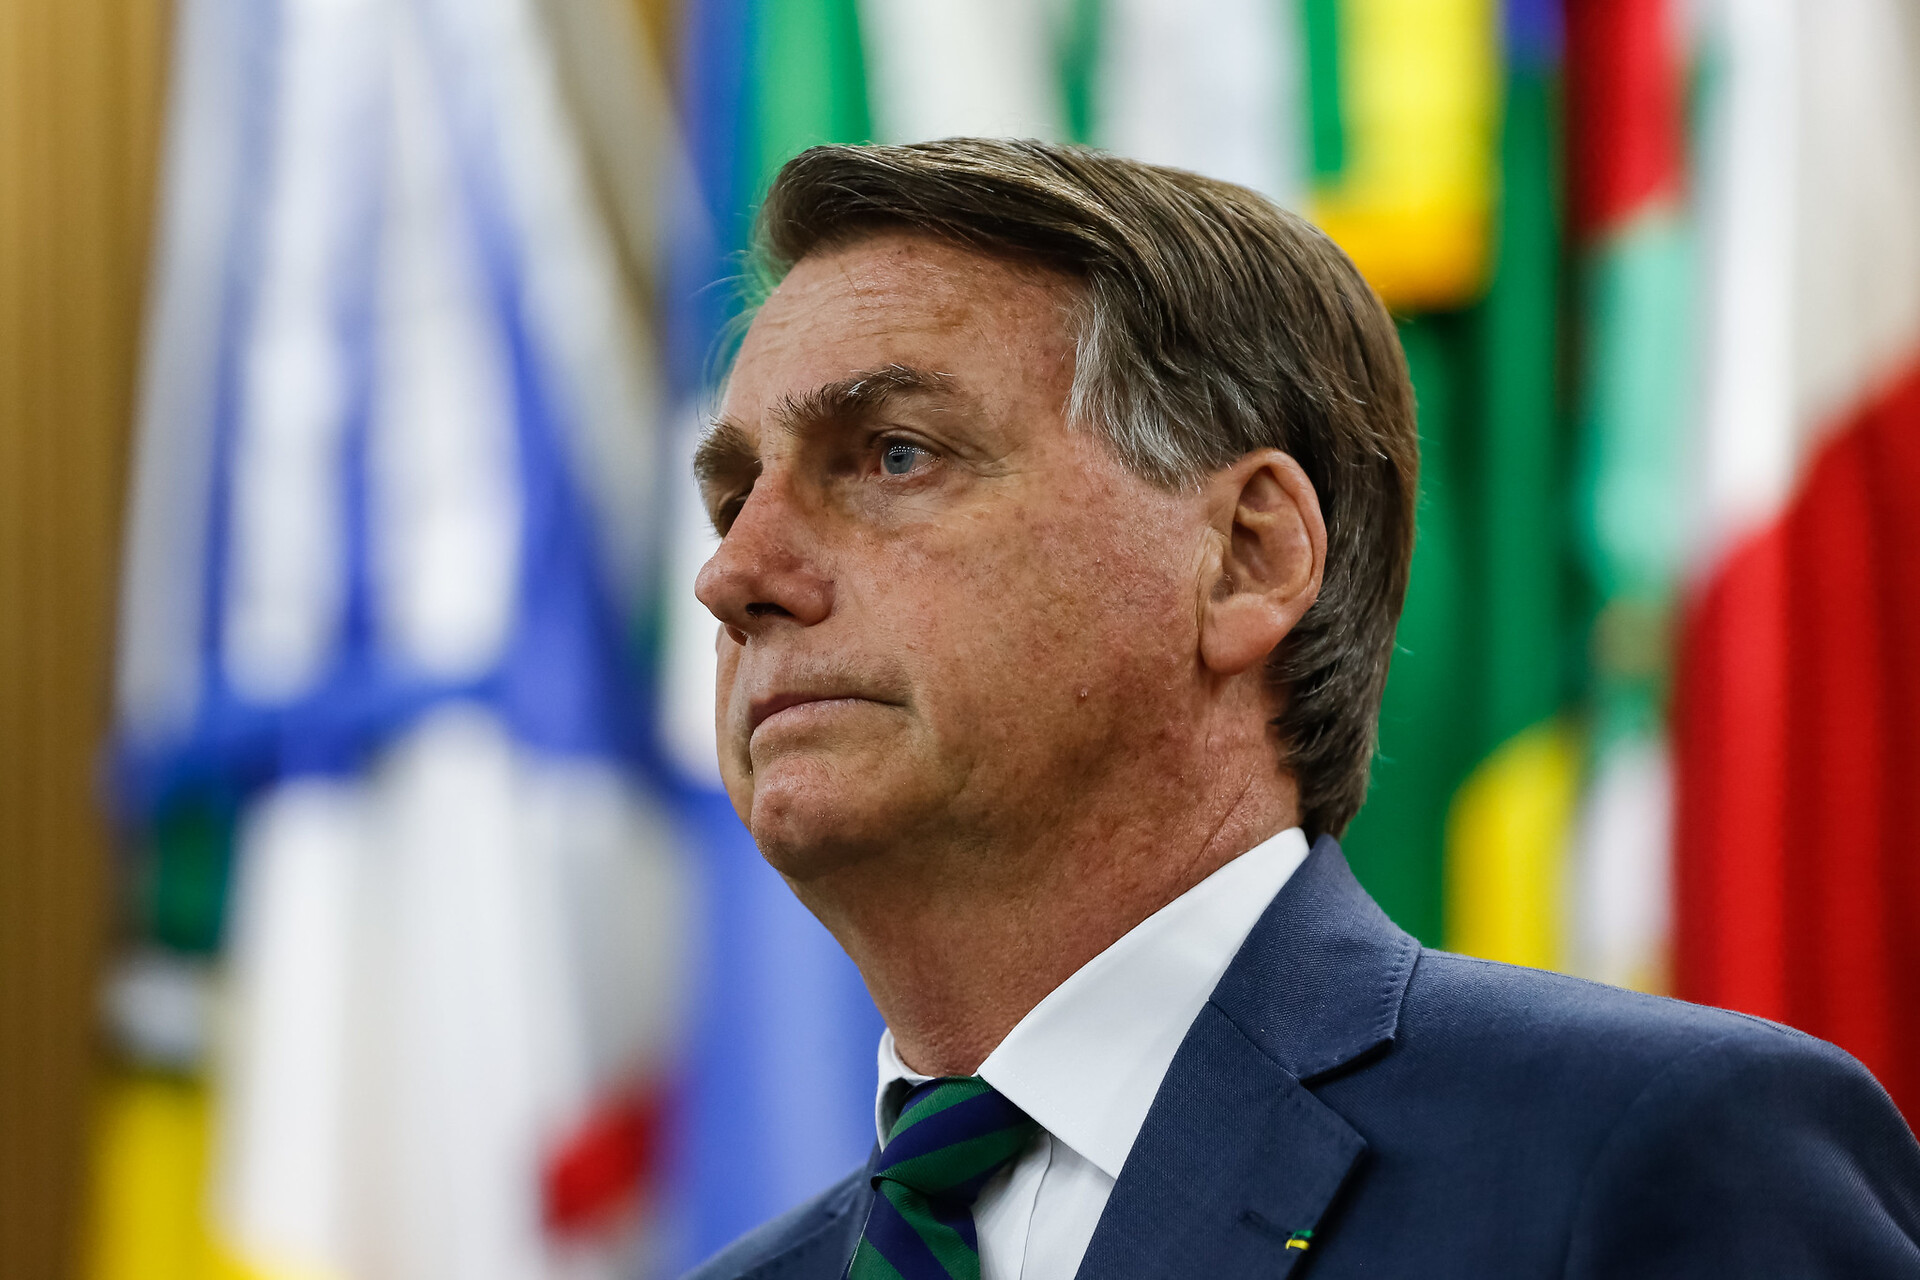 Bolsonaro extinguiu o horário de verão em seu primeiro ano de governo, alegando que não havia benefício econômico